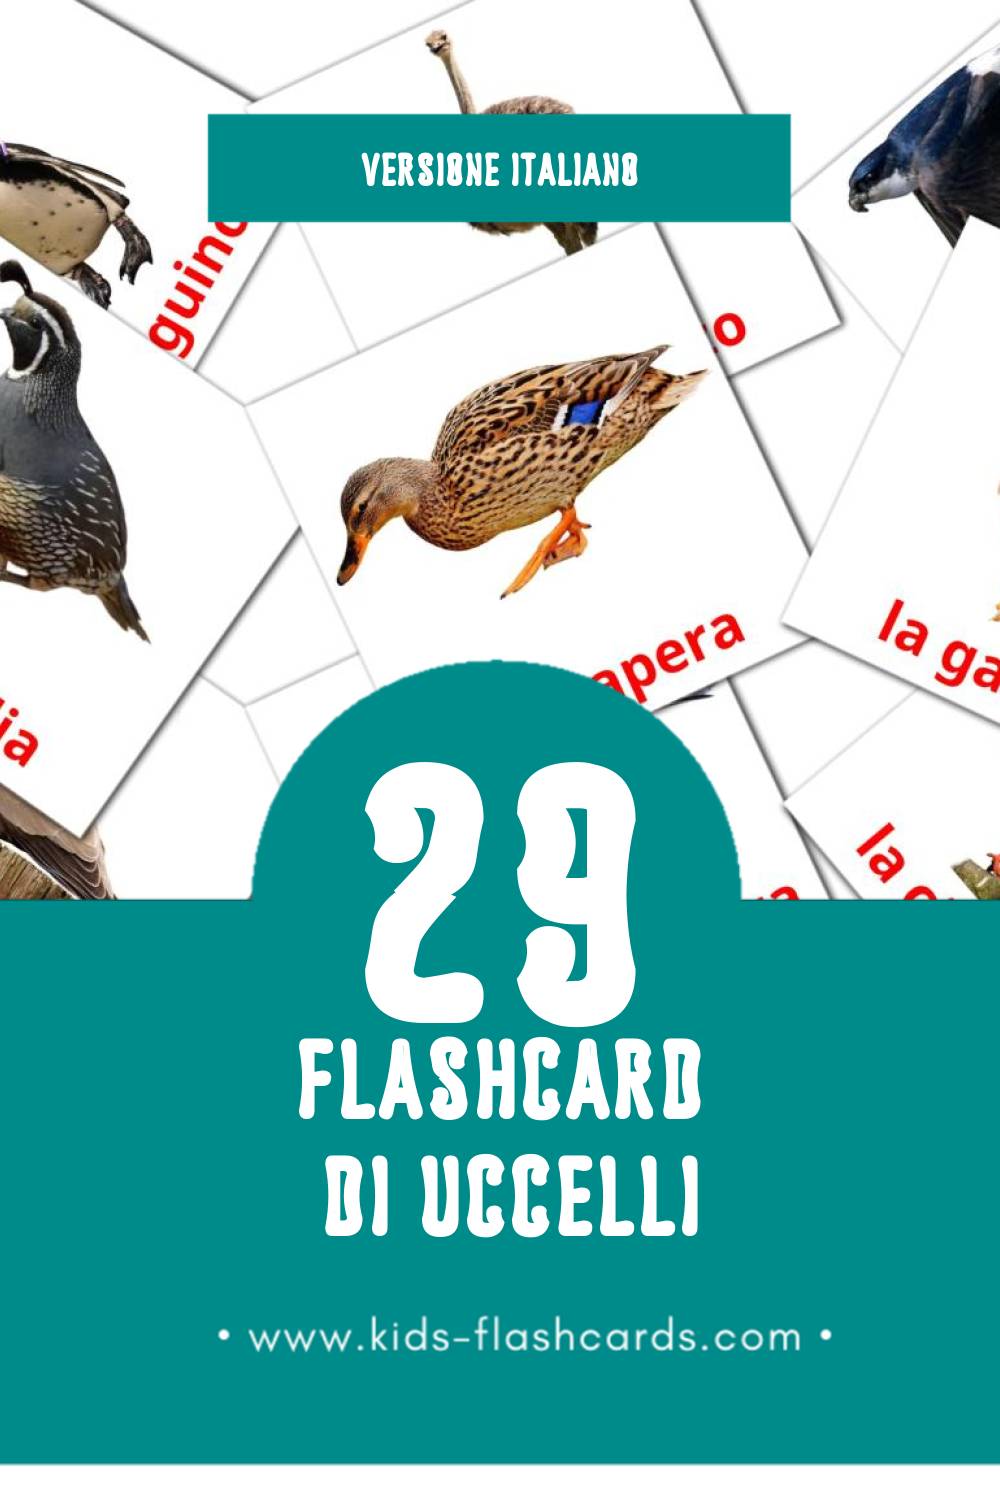 Schede visive sugli Uccelli per bambini (29 schede in Italiano)